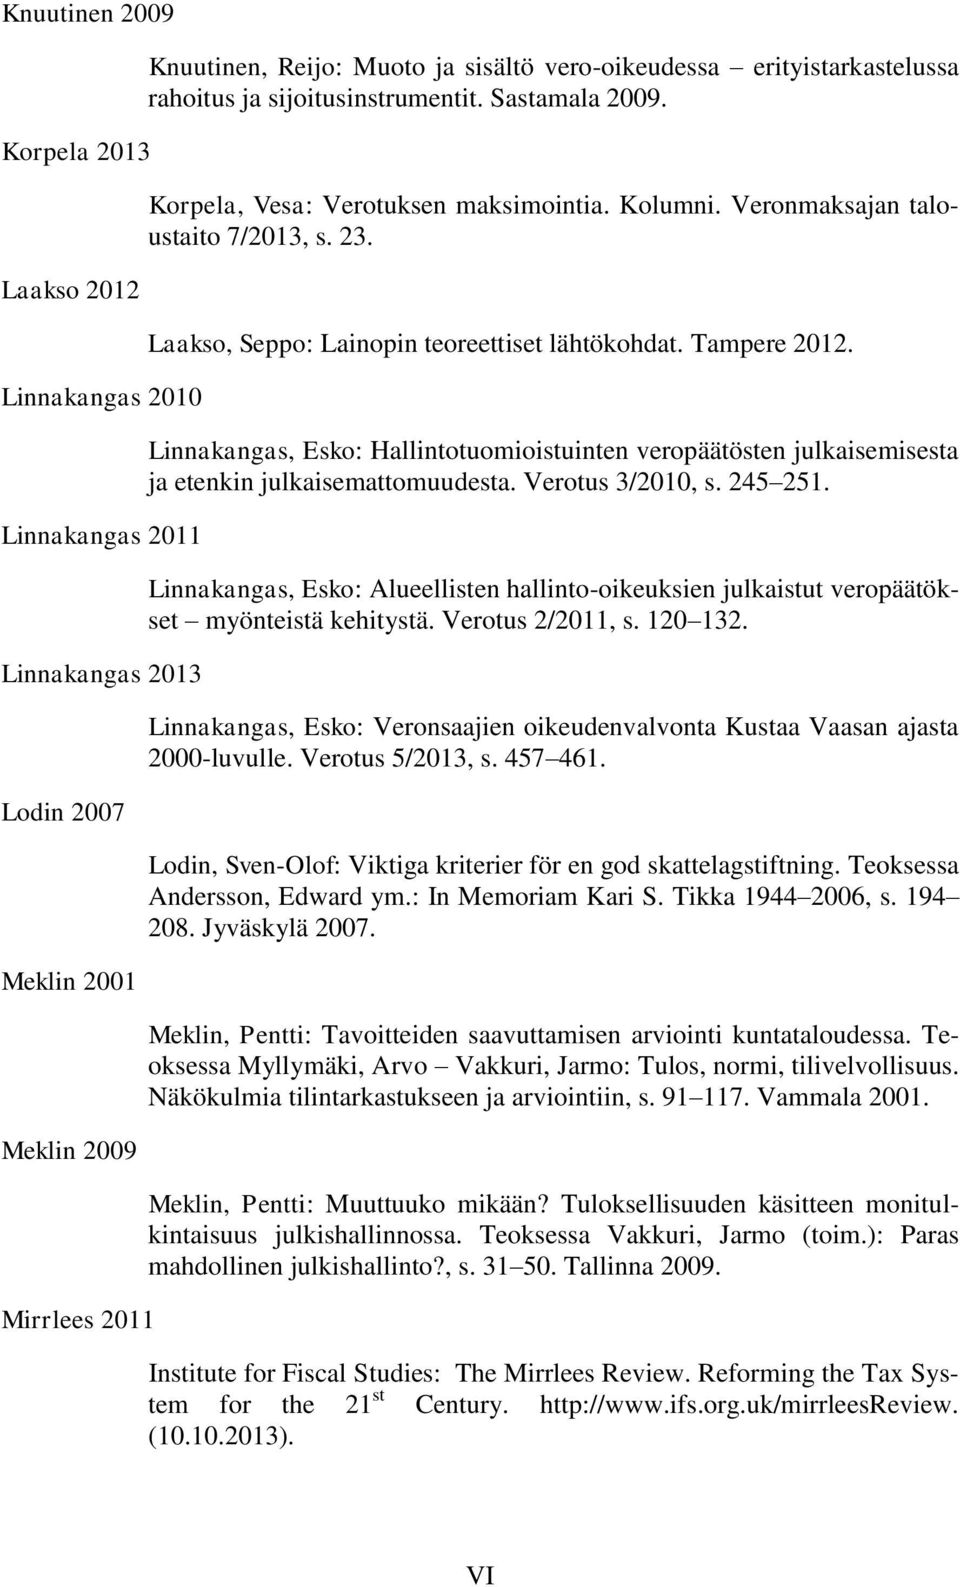 Laakso, Seppo: Lainopin teoreettiset lähtökohdat. Tampere 2012. Linnakangas, Esko: Hallintotuomioistuinten veropäätösten julkaisemisesta ja etenkin julkaisemattomuudesta. Verotus 3/2010, s. 245 251.